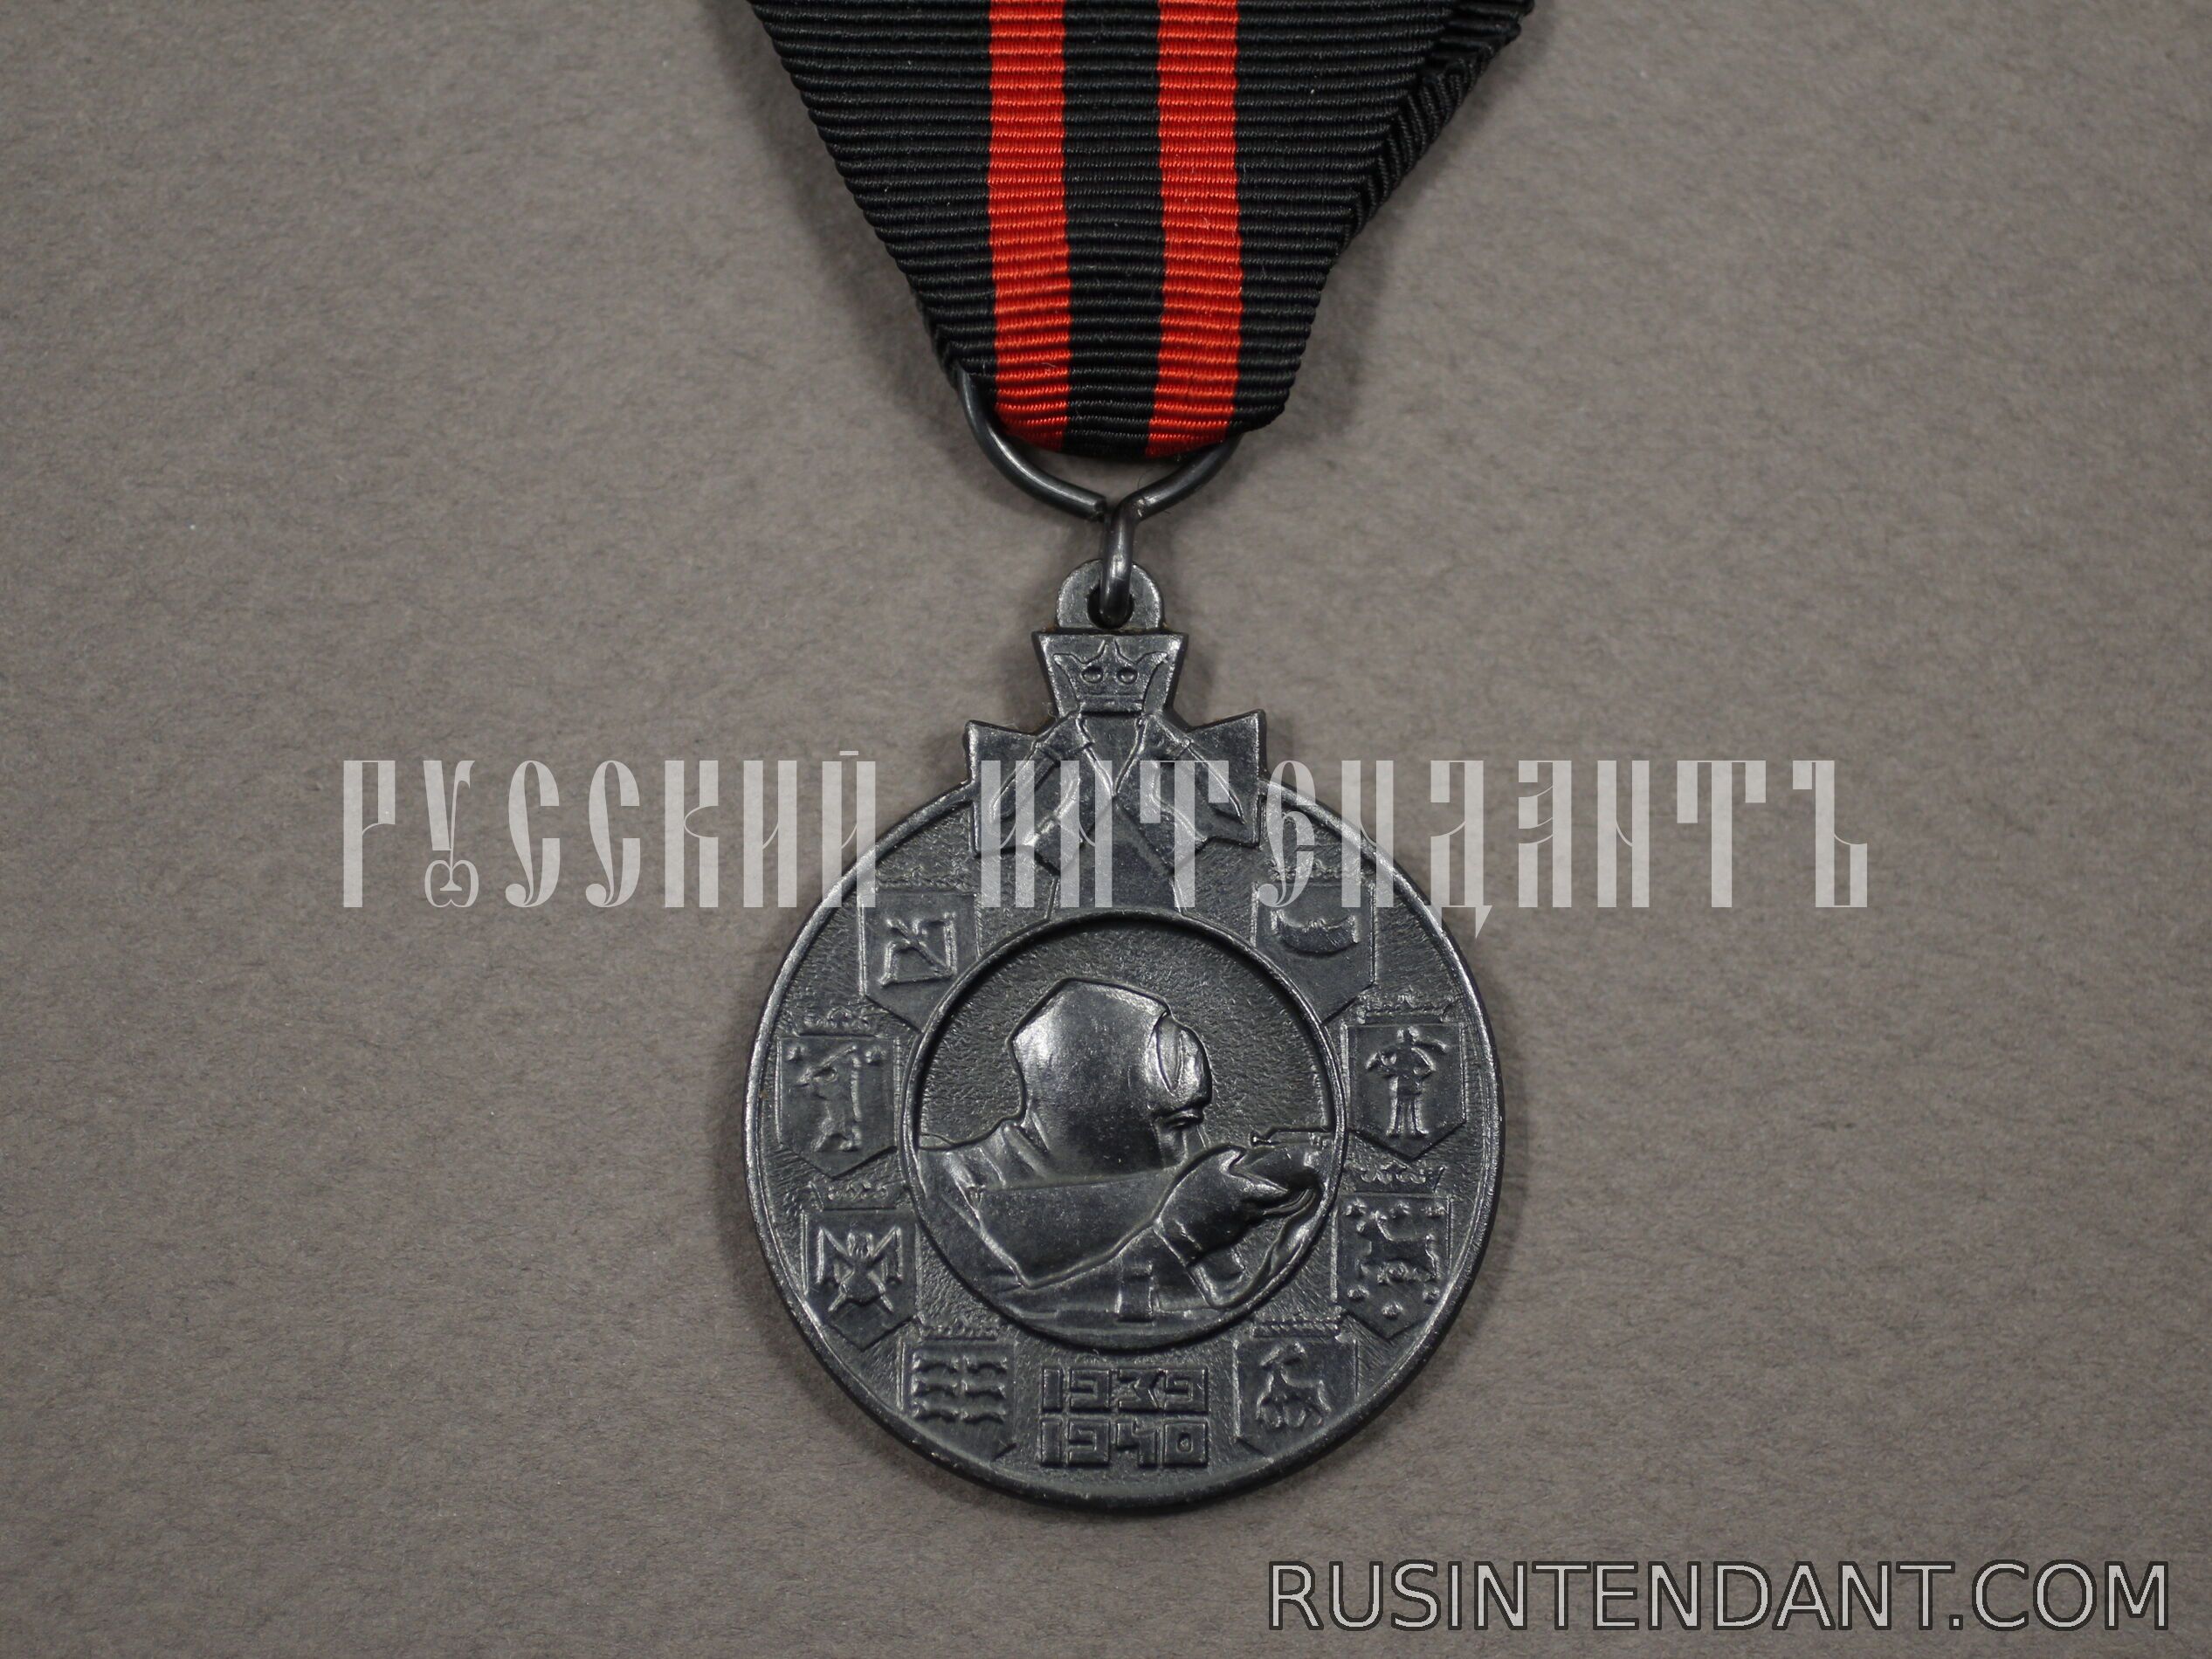 Фото 1: Медаль зимней войны 1939-1940 